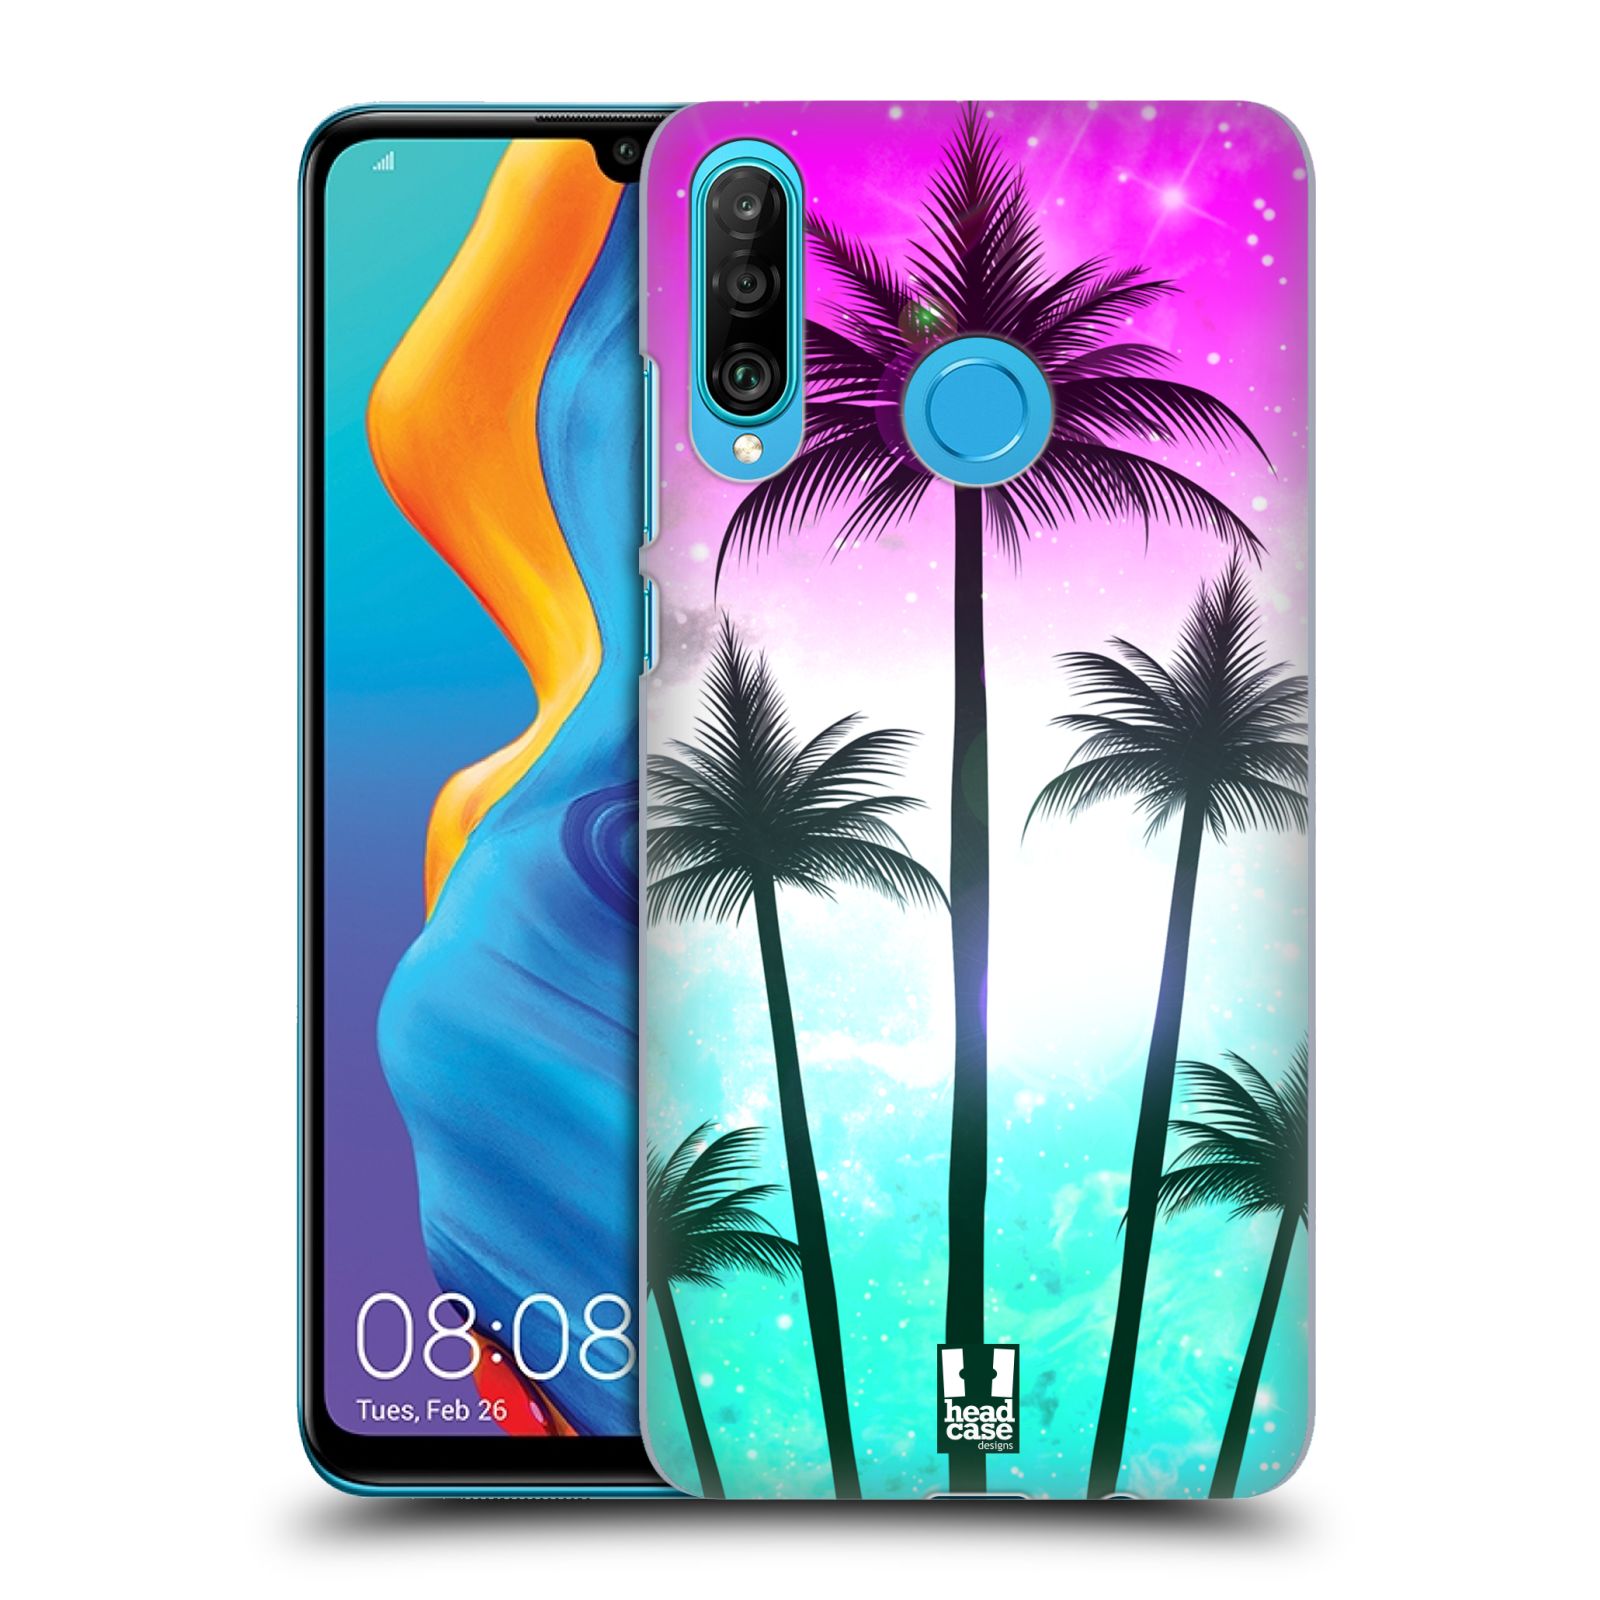 Pouzdro na mobil Huawei P30 LITE - HEAD CASE - vzor Kreslený motiv silueta moře a palmy RŮŽOVÁ A TYRKYS